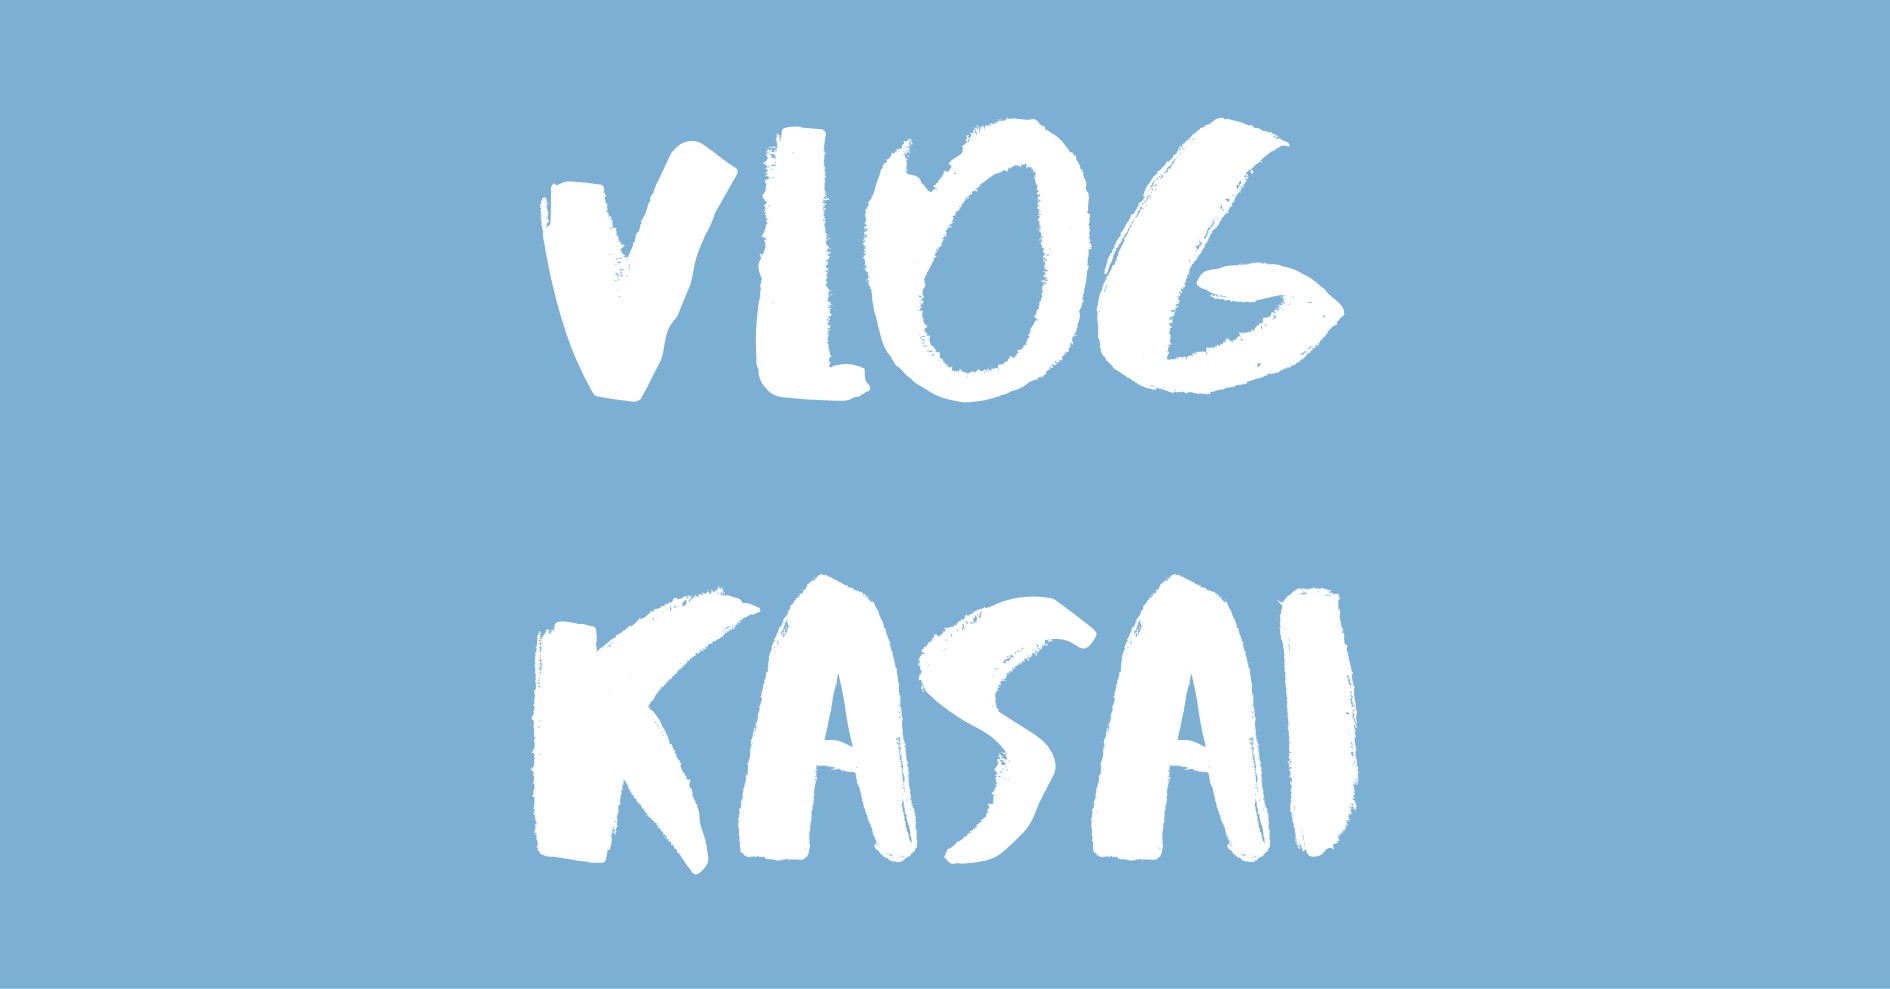 Vlog Kasai